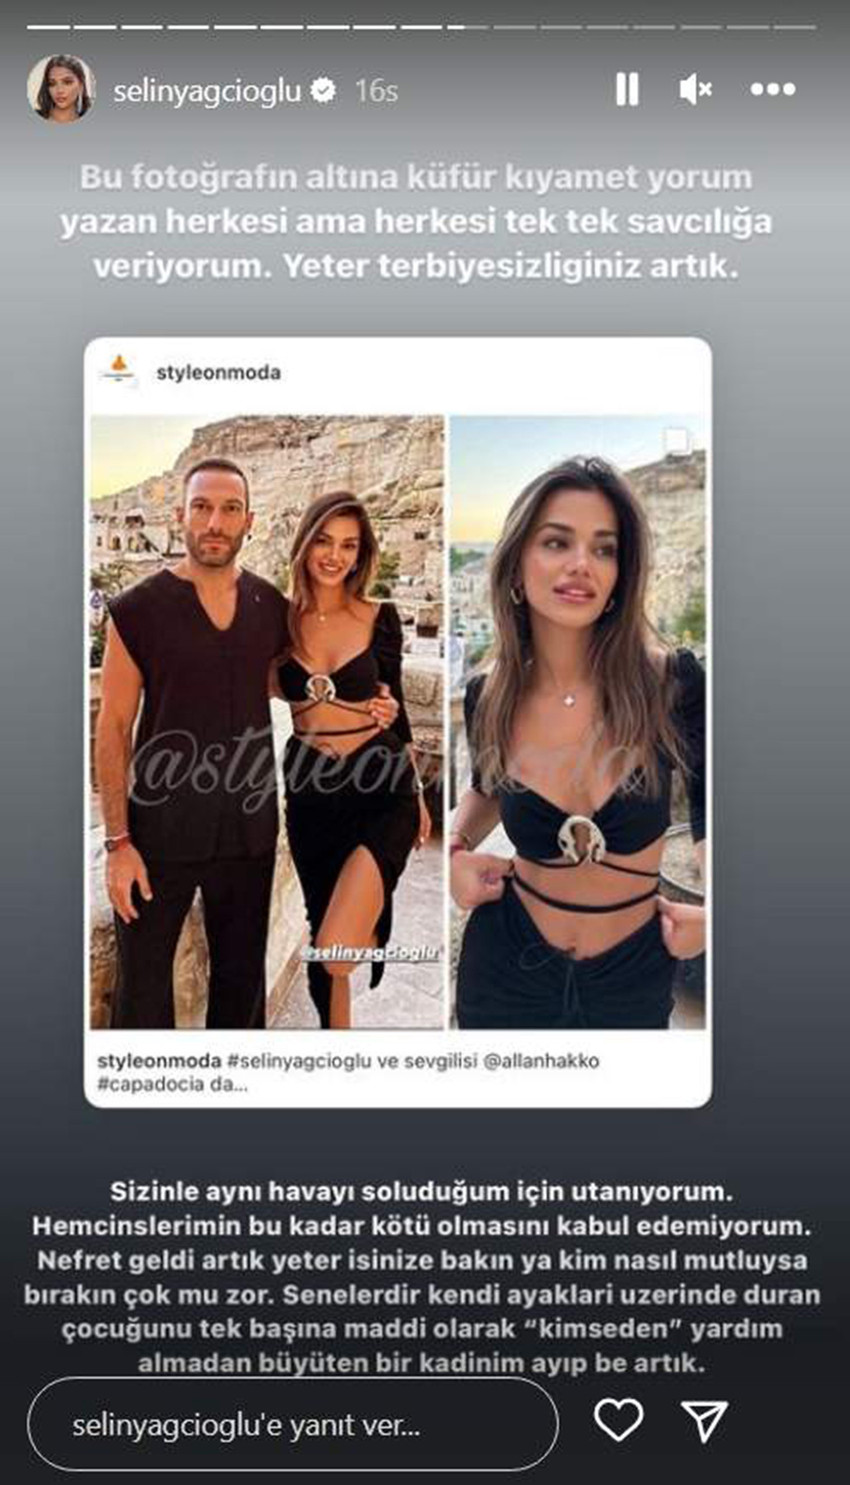 Kısa bir süre önce Berk Atan ile birlikteliğini noktalayarak yeni bir aşka yelken açan sosyal medyanın ünlü isimlerinden Selin Yağcıoğlu, sevgilisi Allan Hakko ile paylaştığı fotoğrafa gelen küfürlü yorumlar sonrası çılgına döndü.